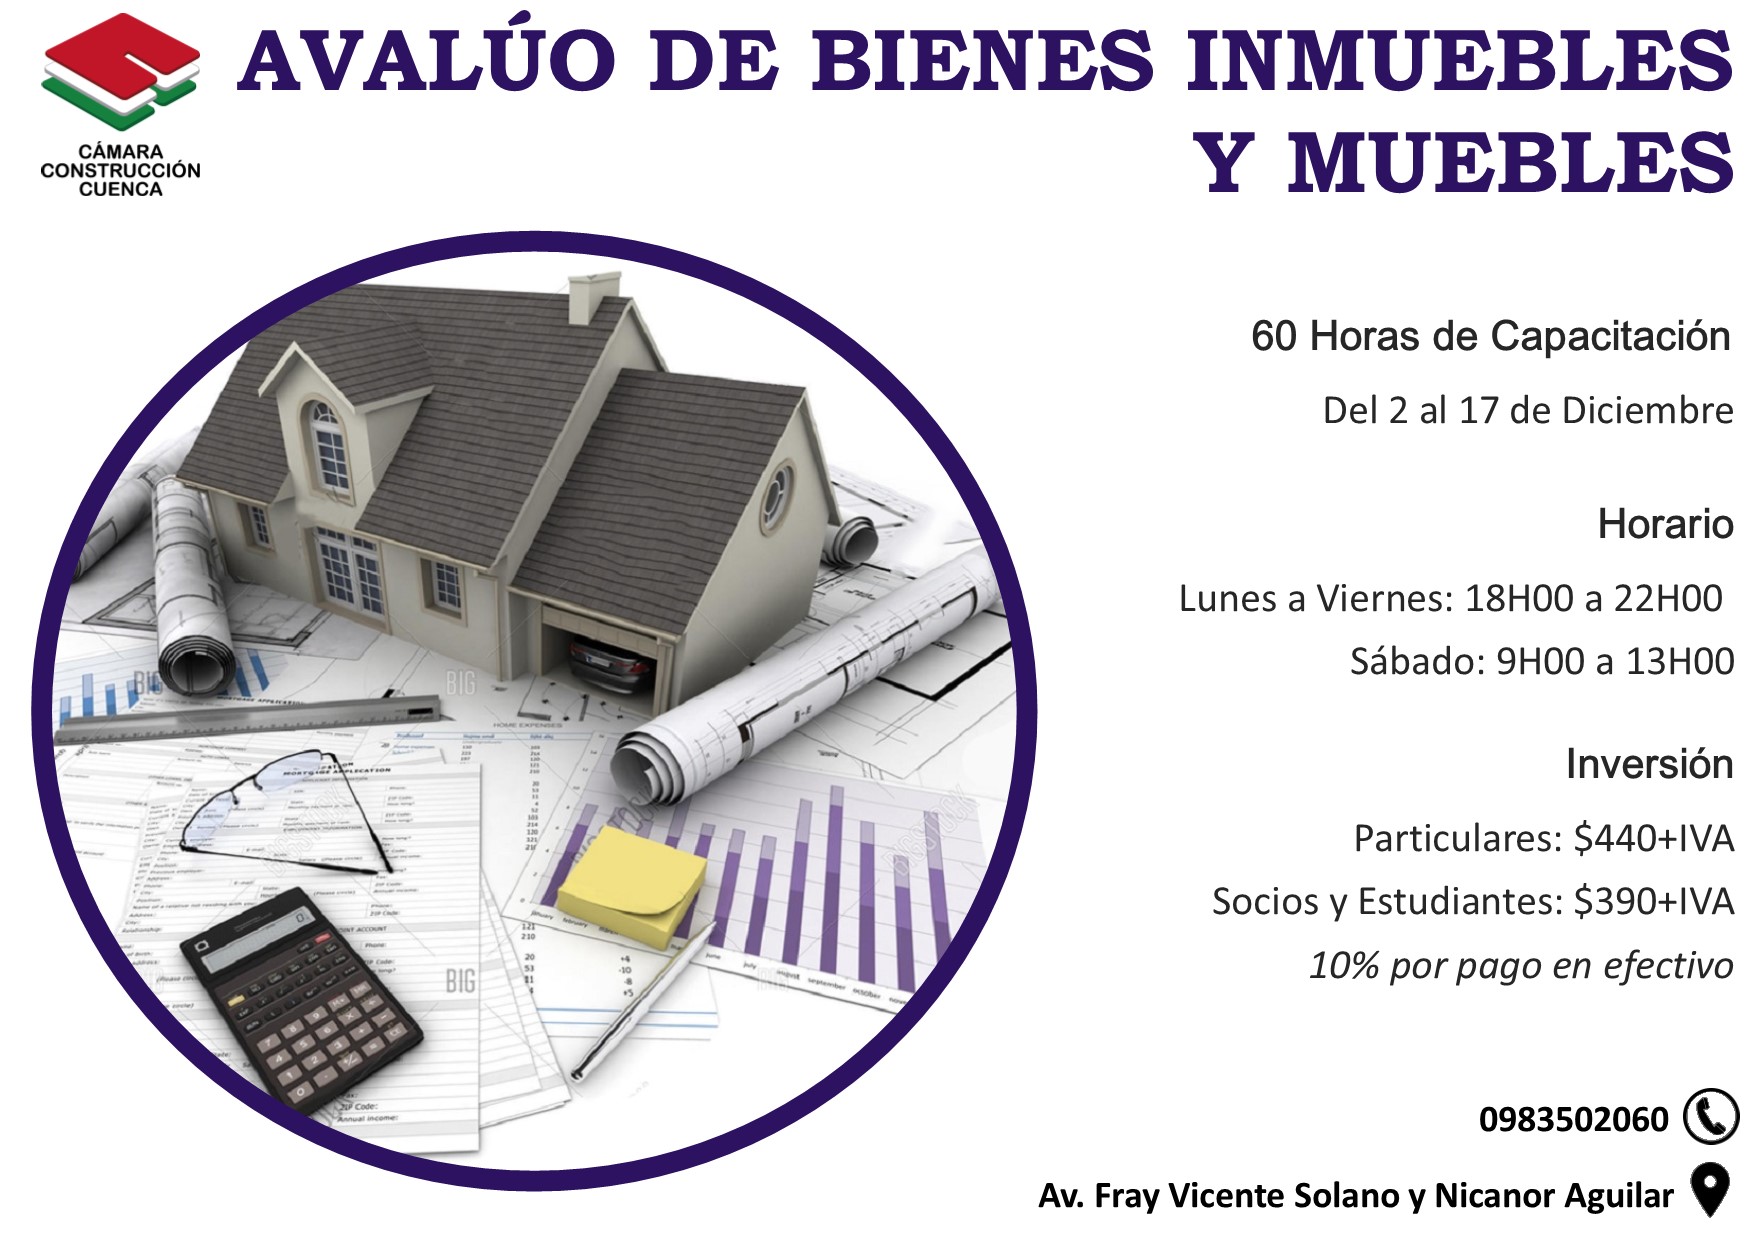 AVALÚO DE BIENES INMUEBLES Y MUEBLES - Cámara Construcción Cuenca